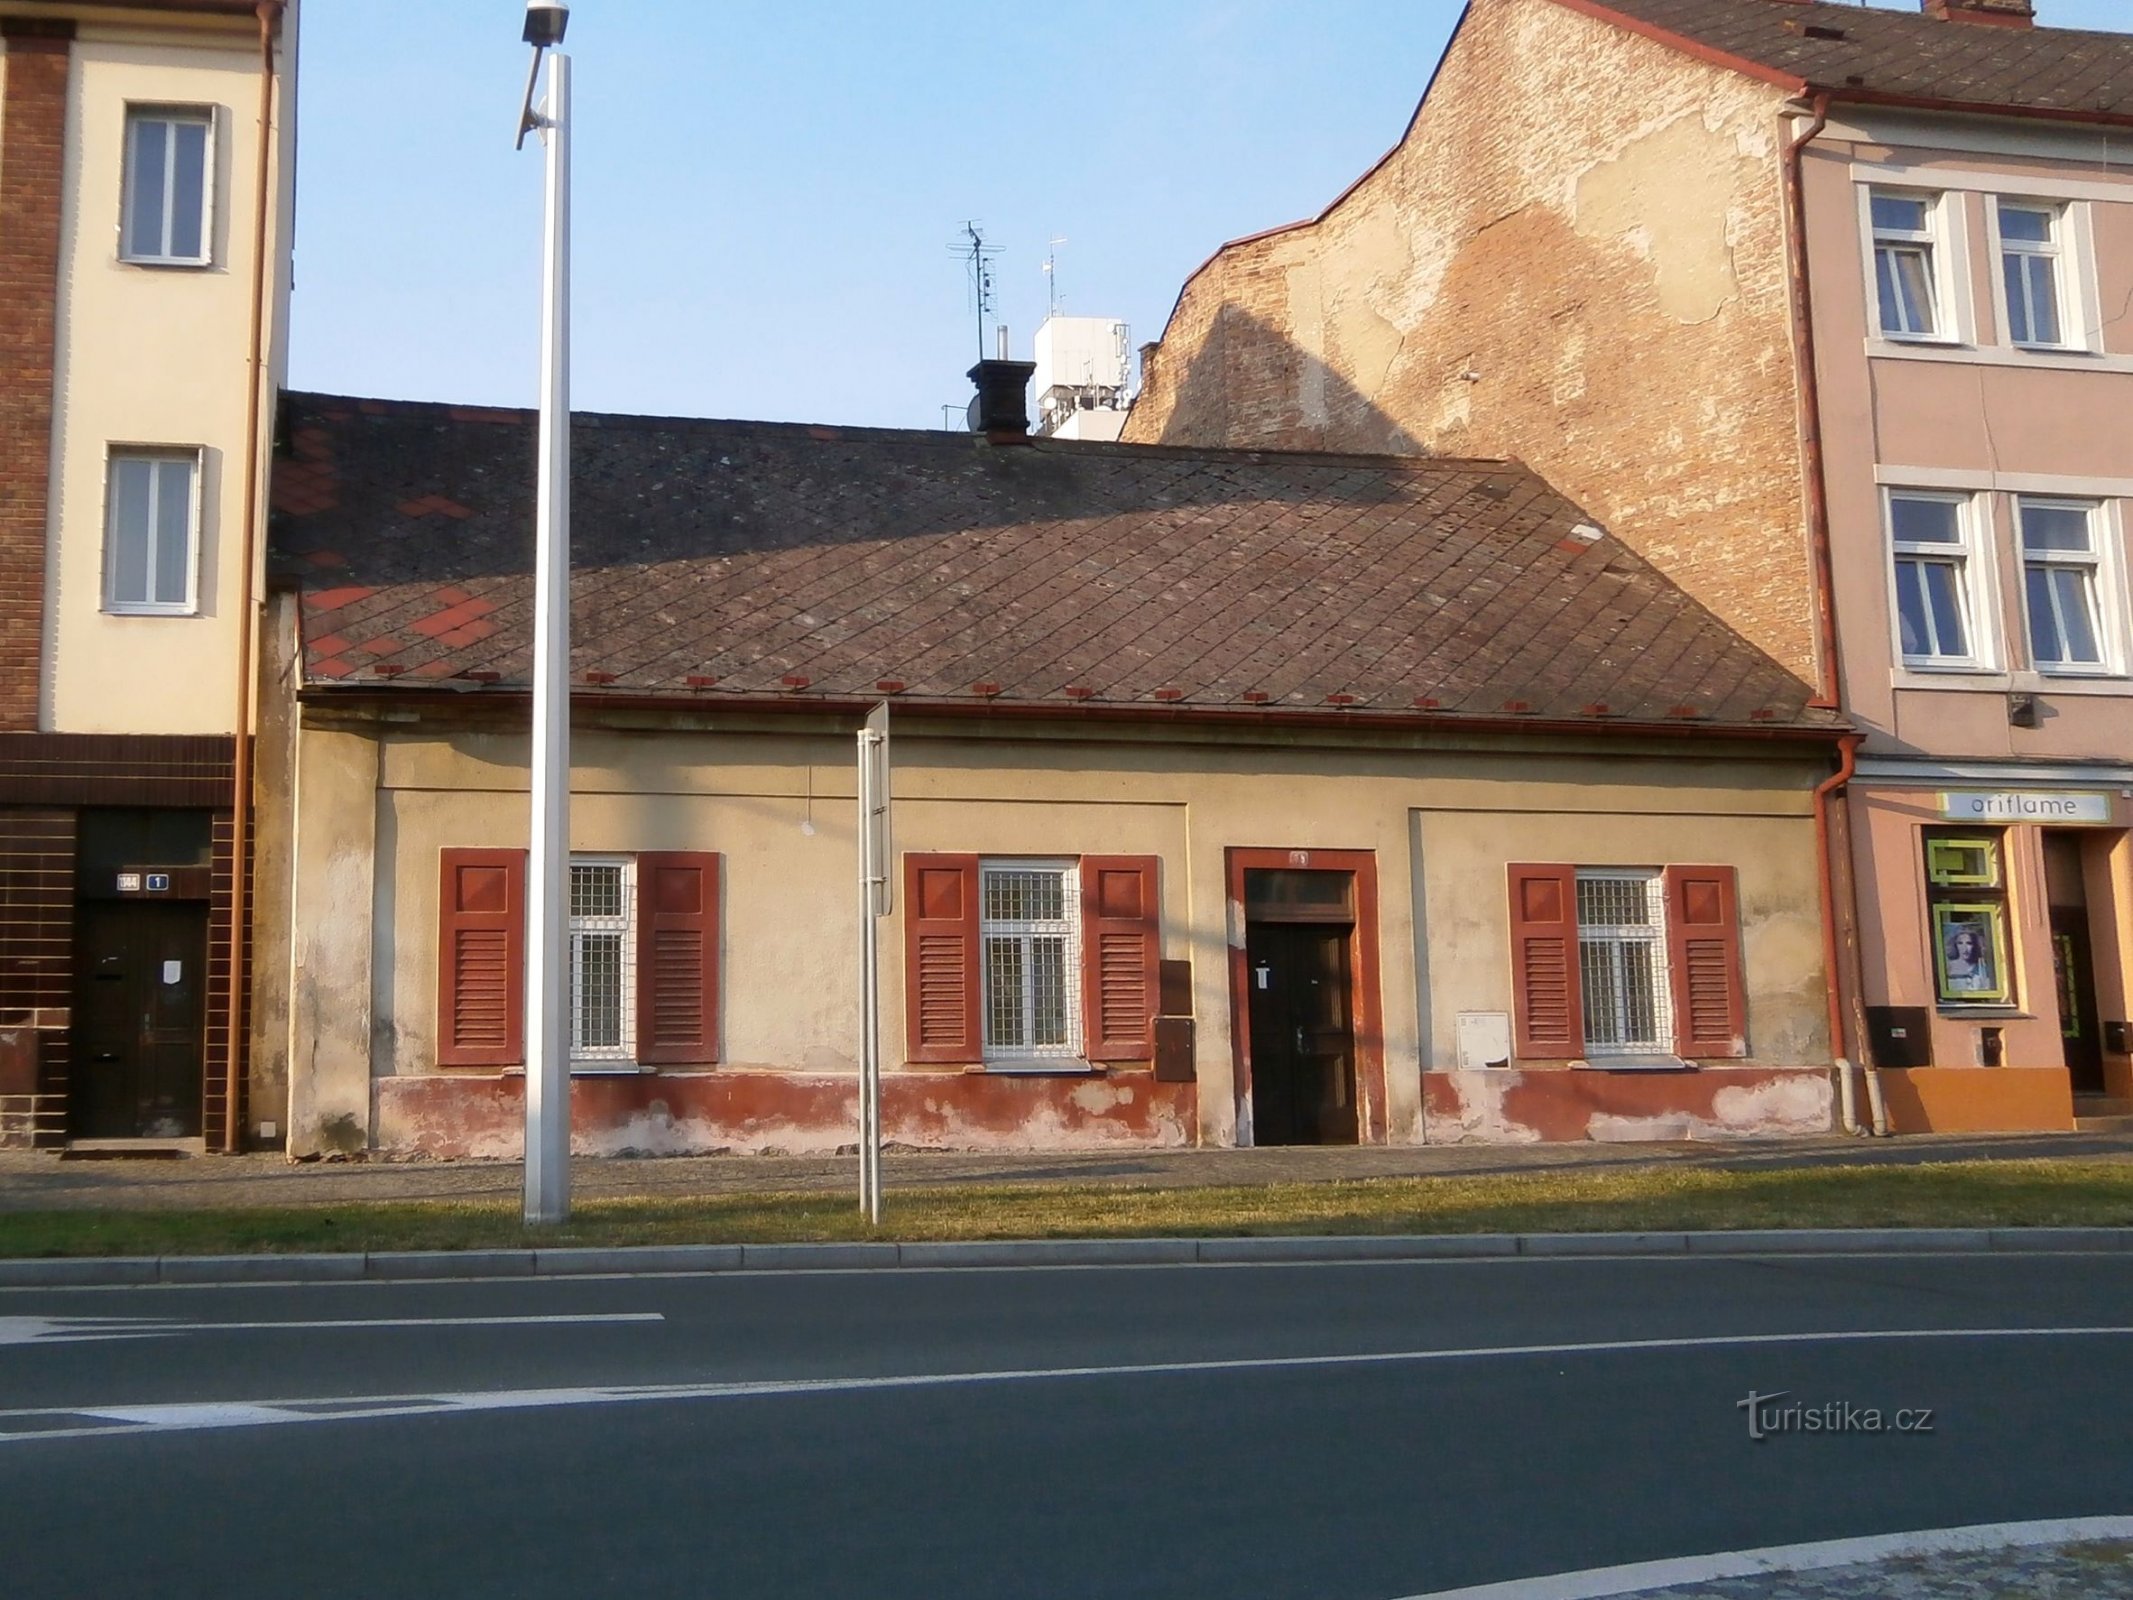 Estación n° 78 (Hradec Králové, 27.7.2014/XNUMX/XNUMX)